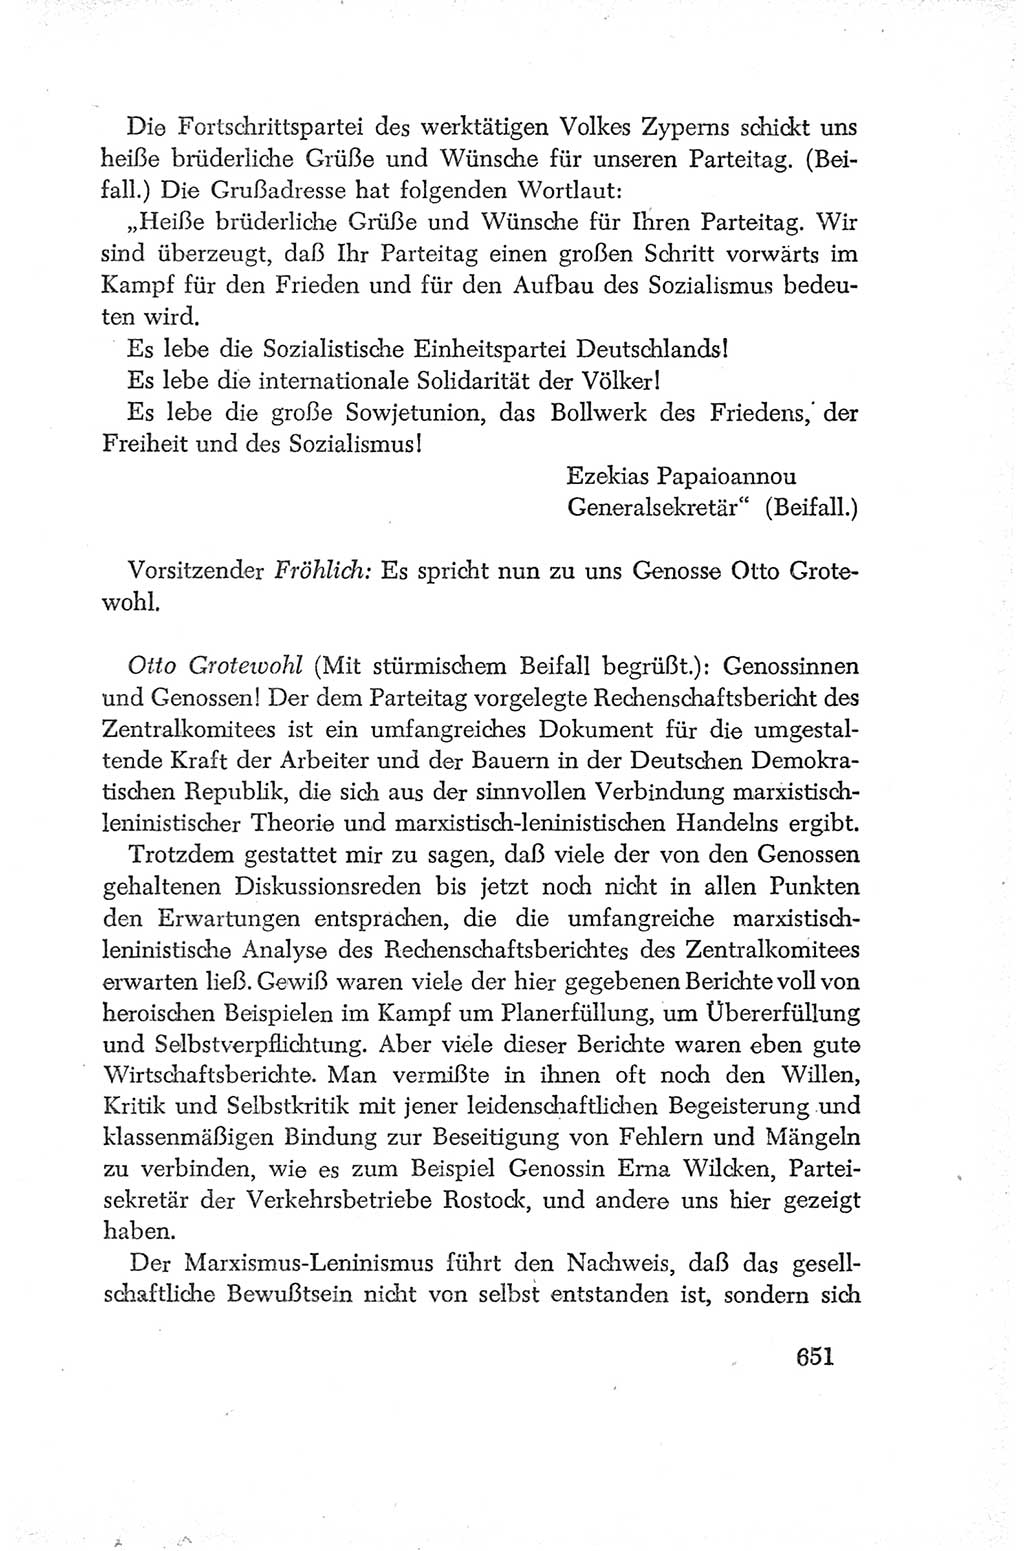 Protokoll der Verhandlungen des Ⅳ. Parteitages der Sozialistischen Einheitspartei Deutschlands (SED) [Deutsche Demokratische Republik (DDR)] 1954, Seite 651